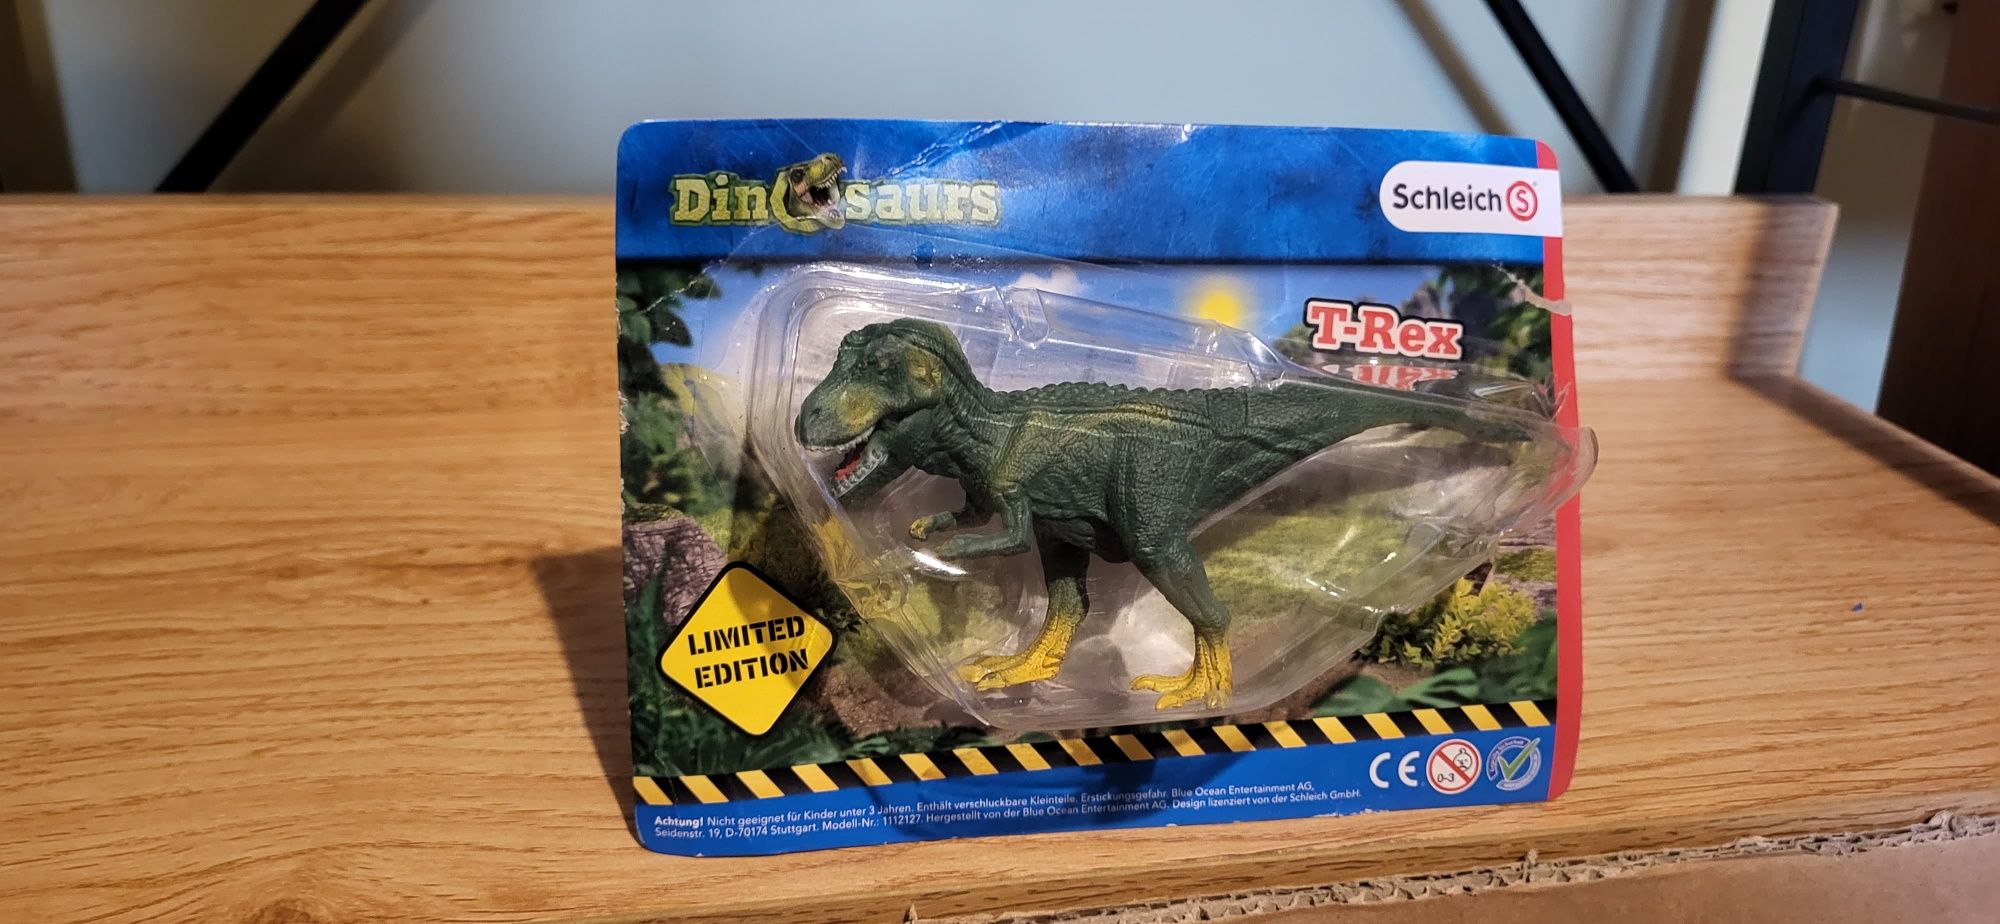 Schleich mini dinozaur T-rex figurki edycja limitowana